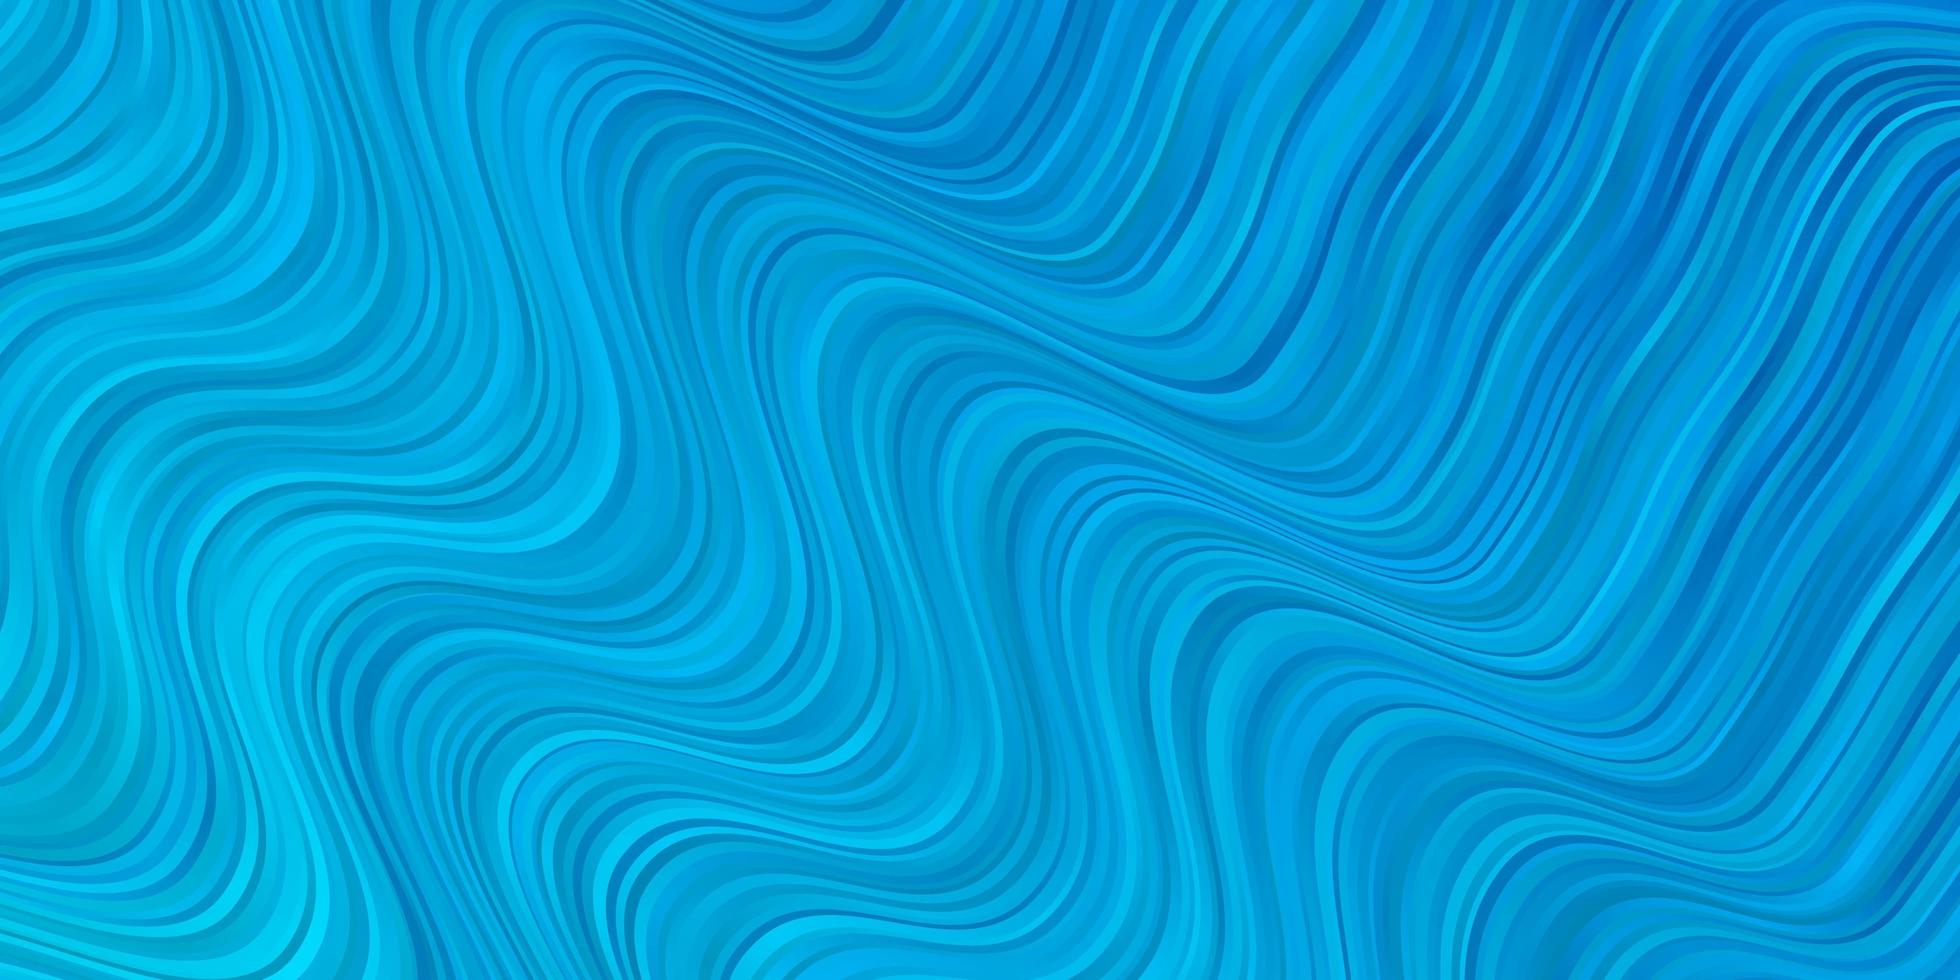 telón de fondo de vector azul claro con curvas ilustración colorida con líneas curvas mejor diseño para su banner de cartel publicitario